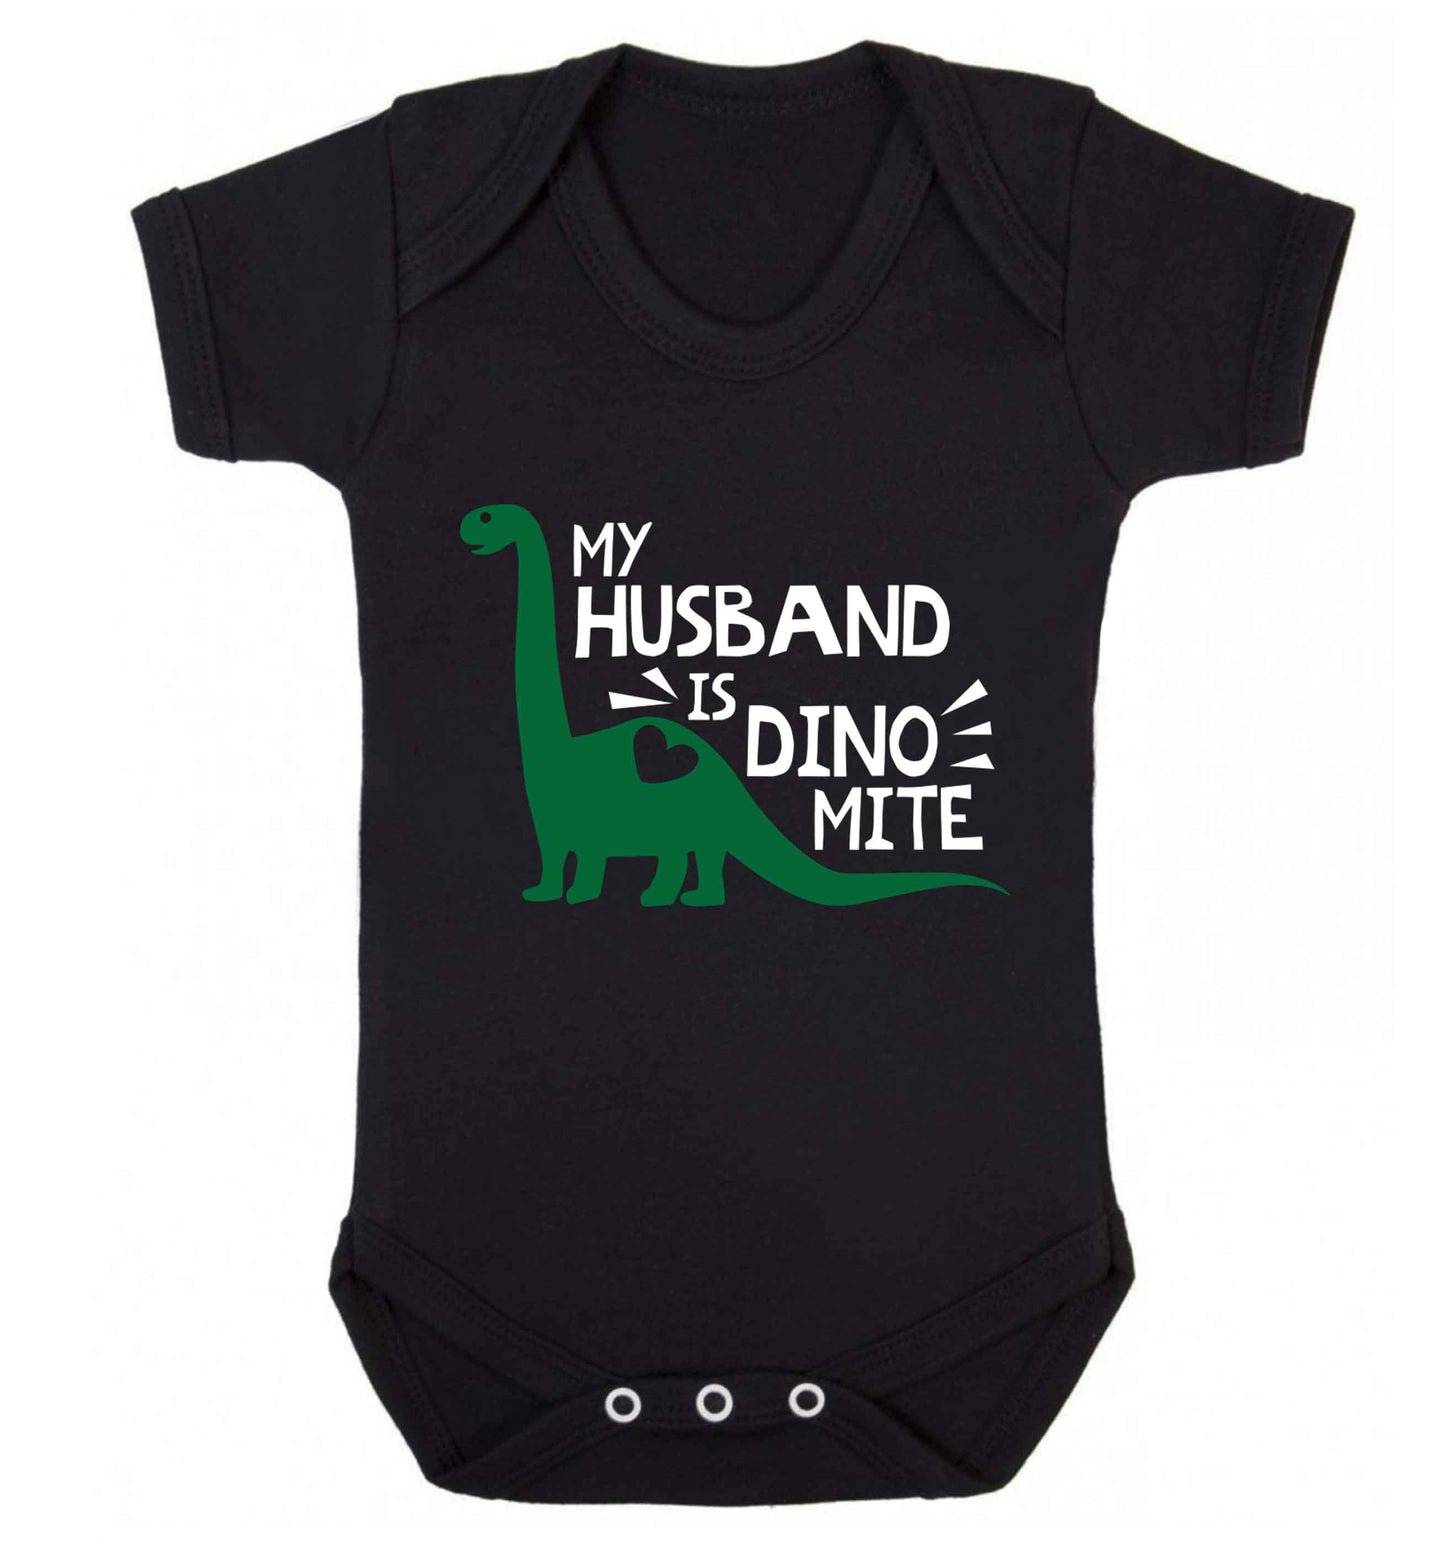 My husband is dinomite! Baby Vest black 18-24 months